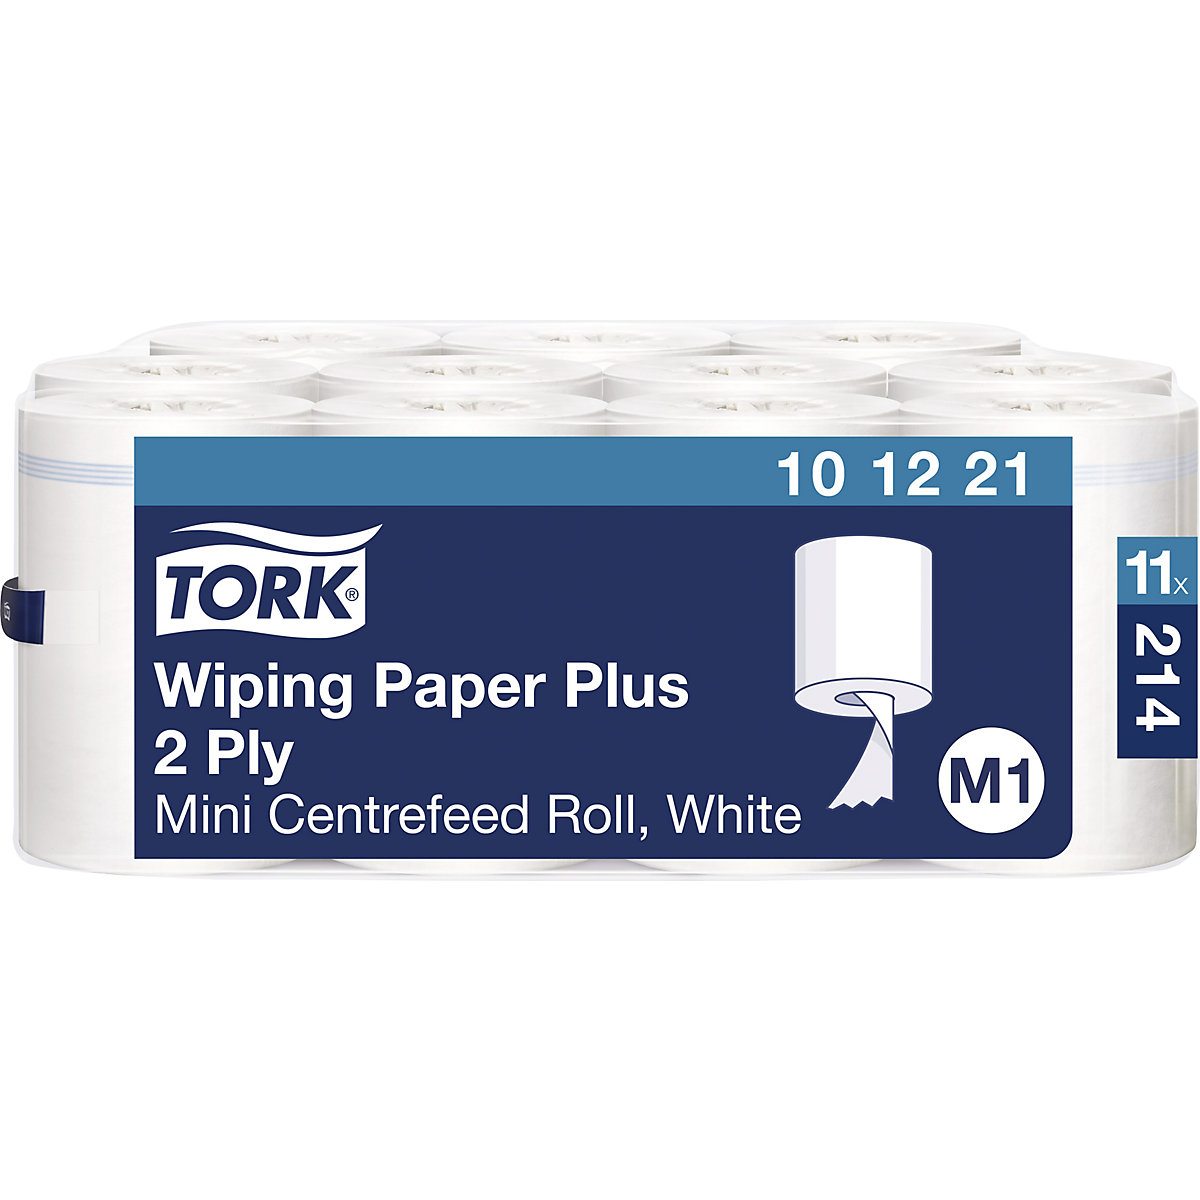 Mocne uniwersalne ściereczki papierowe Mini, centralne dozowanie - TORK